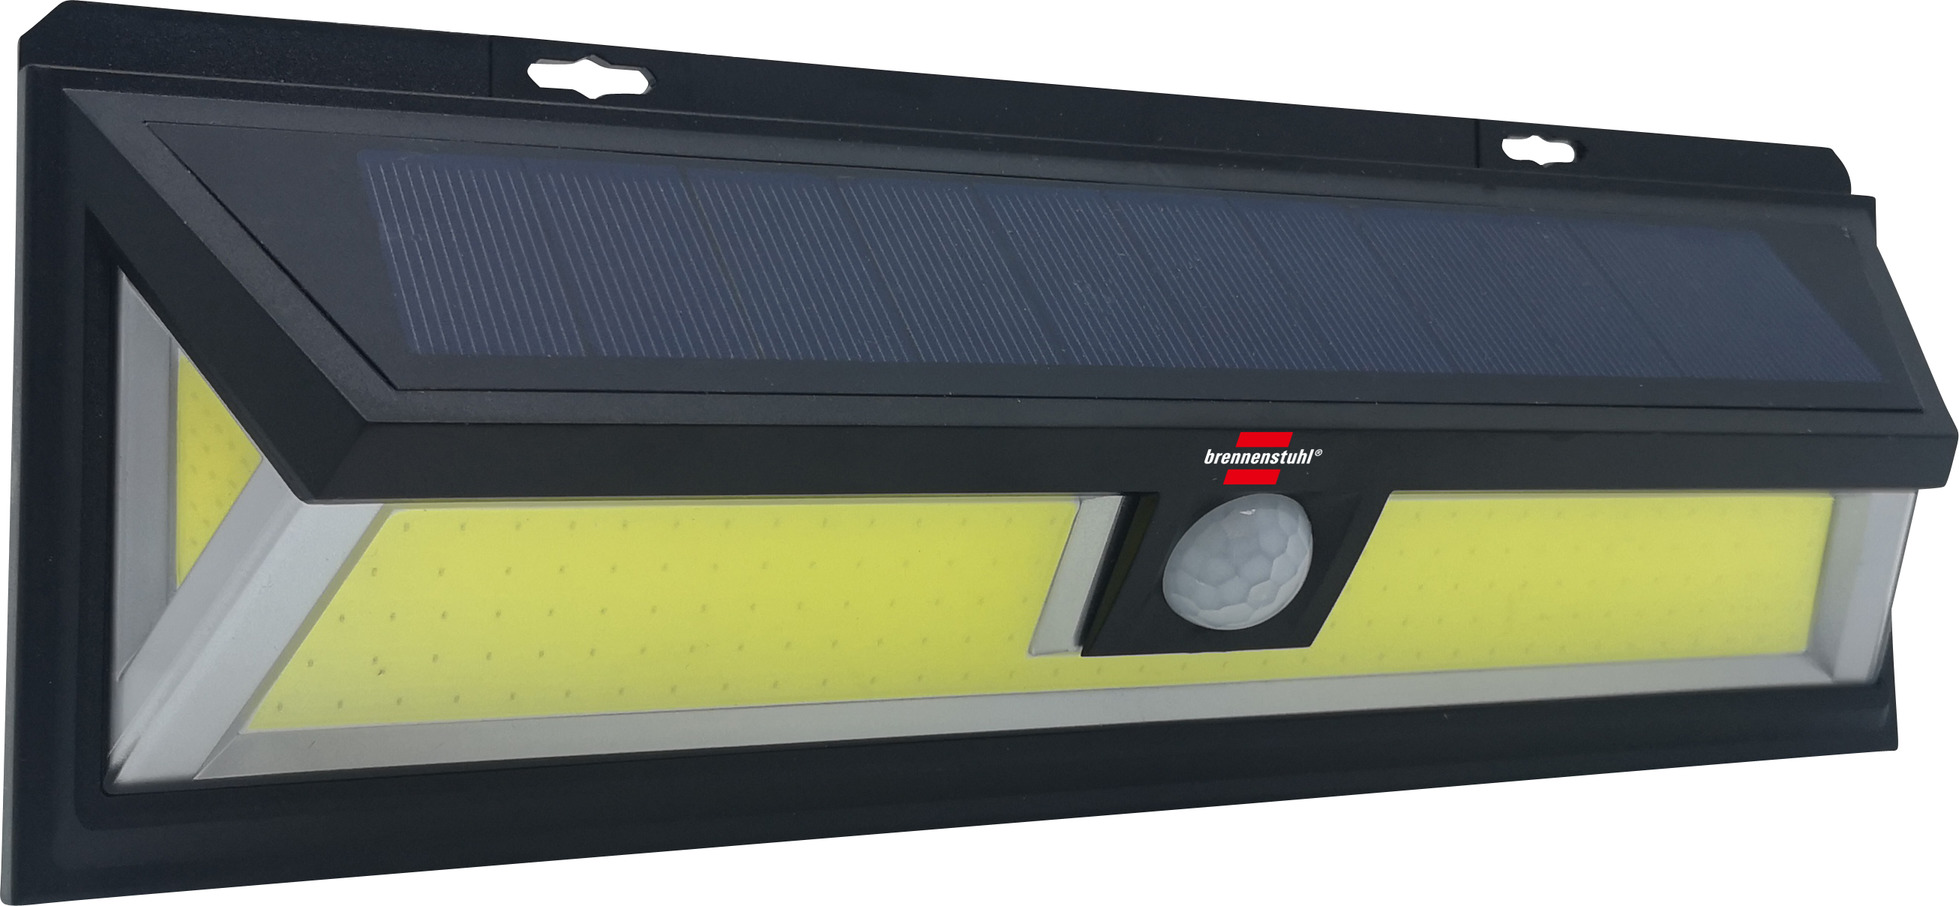 Solar LED-Wandleuchte SOL WL 700 mit PIR Bewegungsmelder, IP65, COB LED  10W, 700lm, schwarz | brennenstuhl®